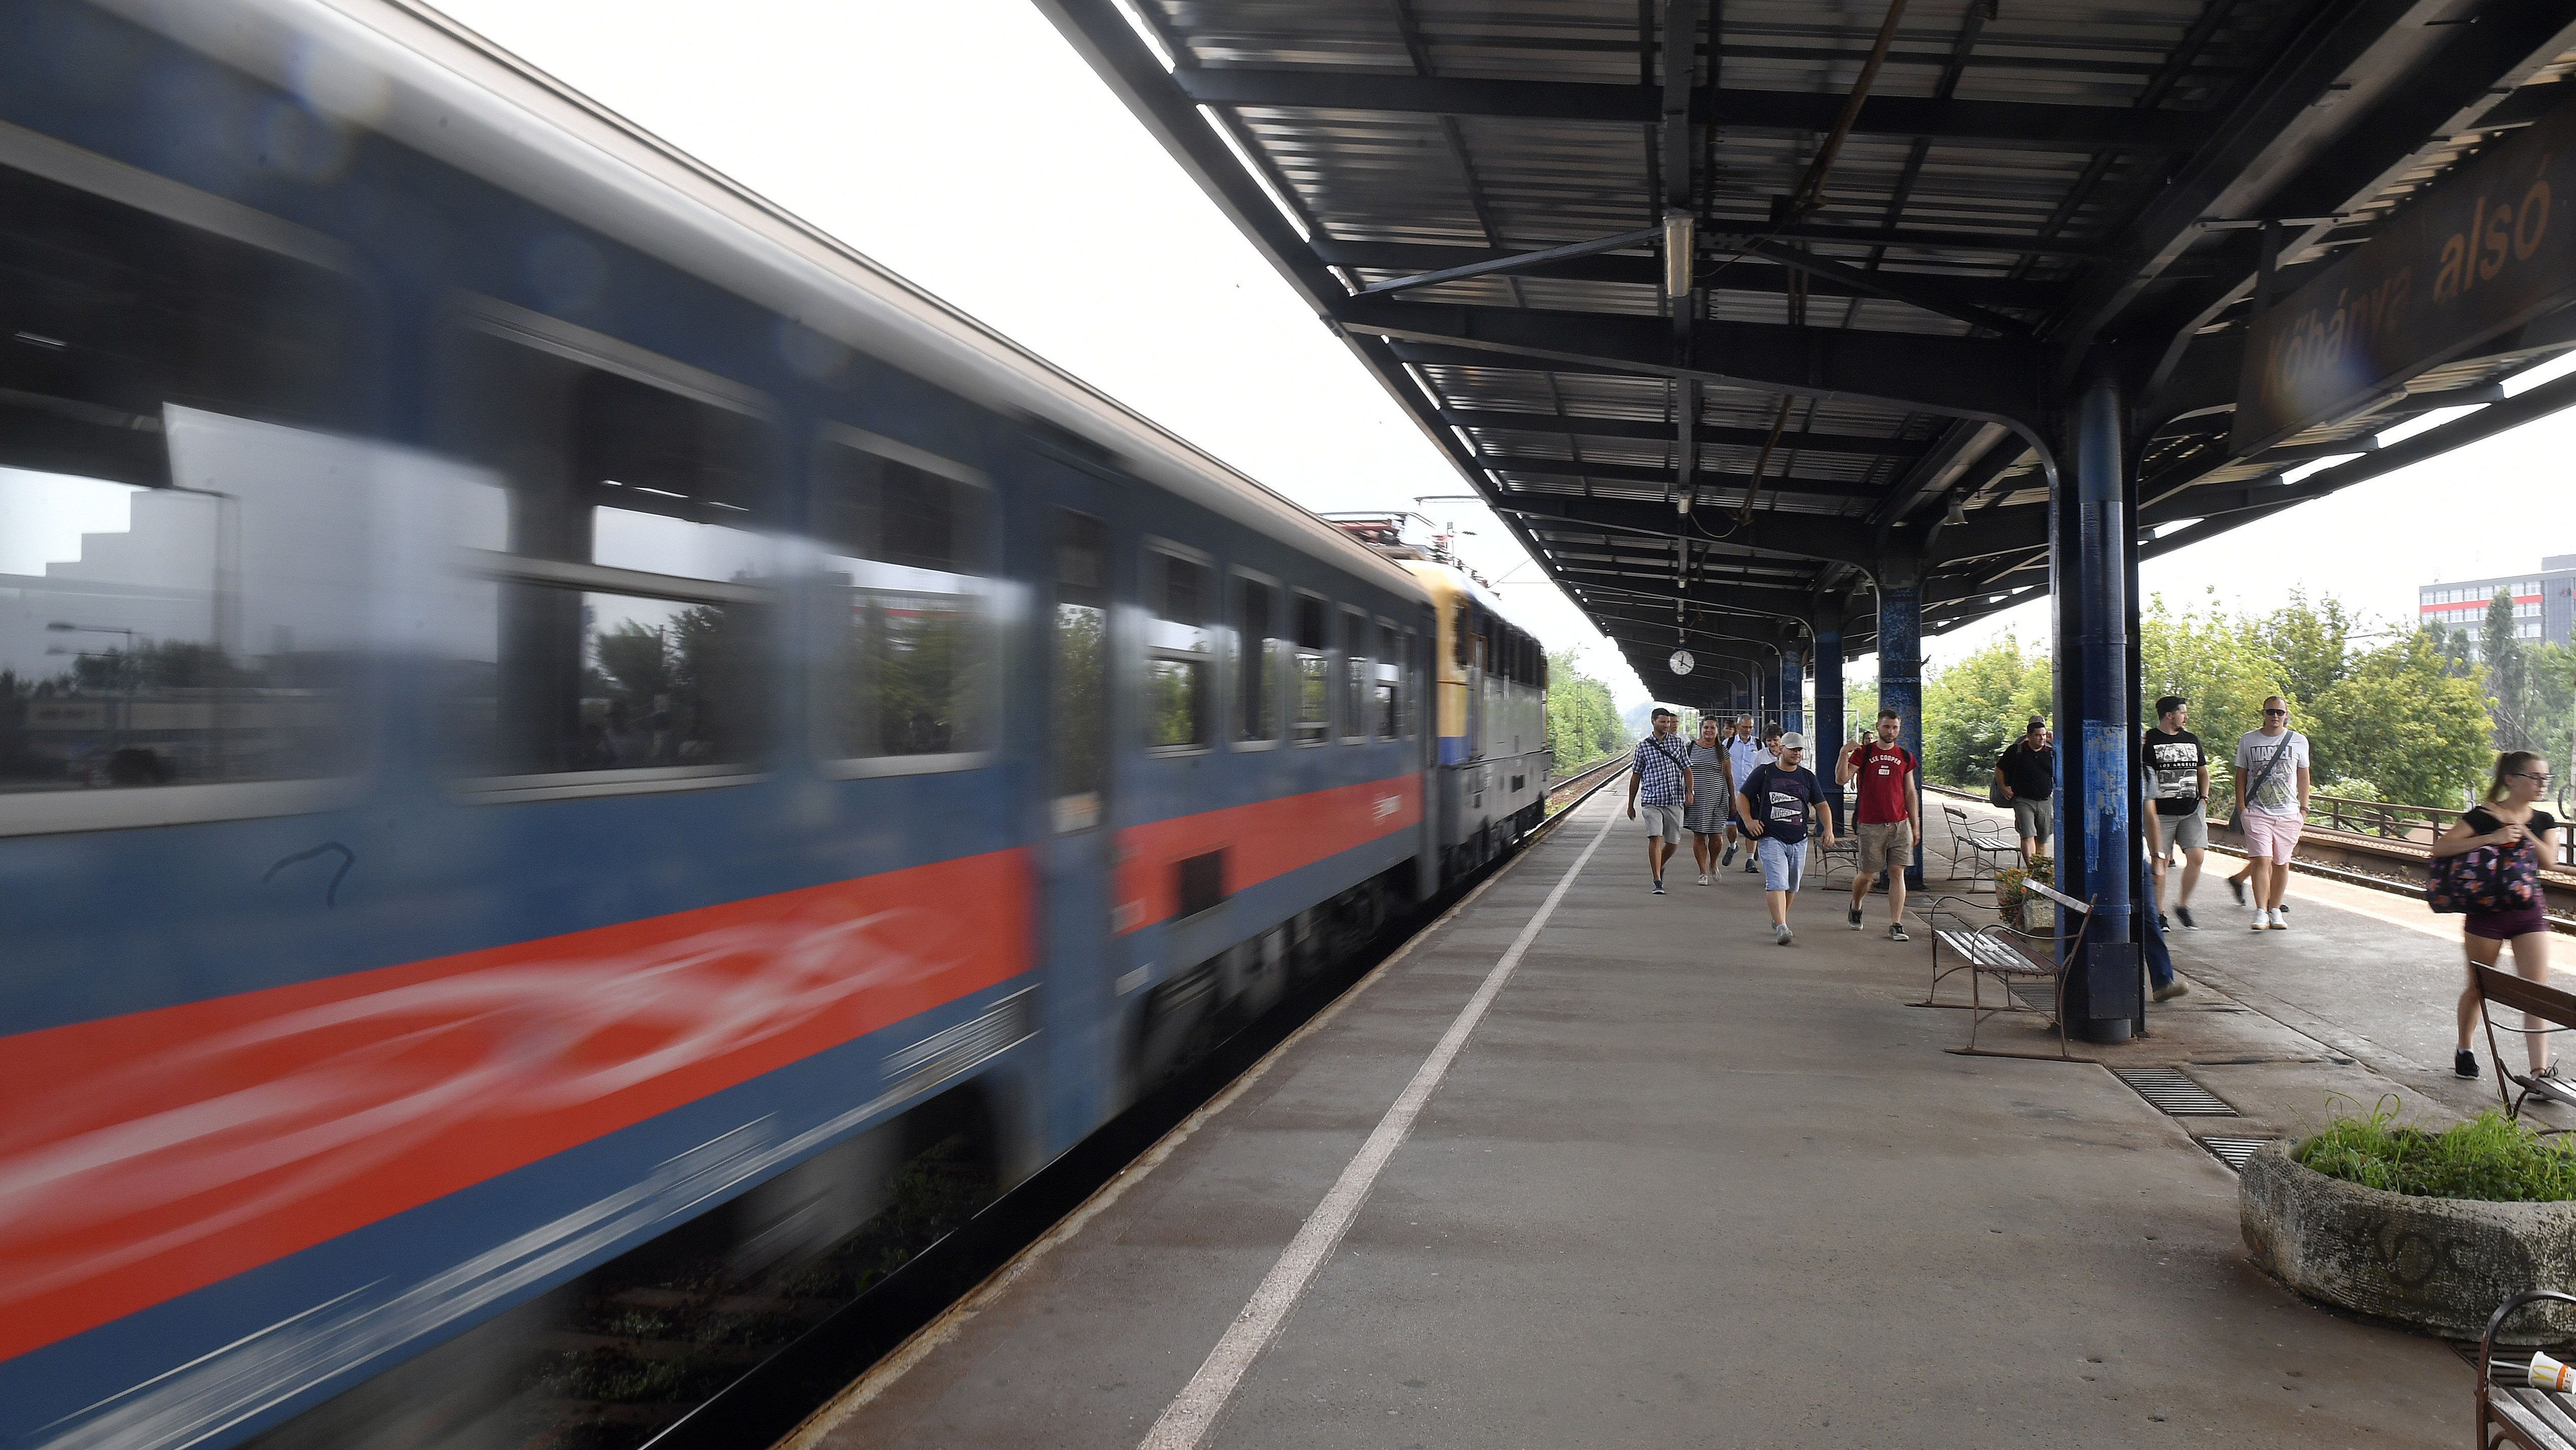 Leváltott egy vezetőt a MÁV, mert tárolóvágányra húztak ki egy utasokkal teli vonatot